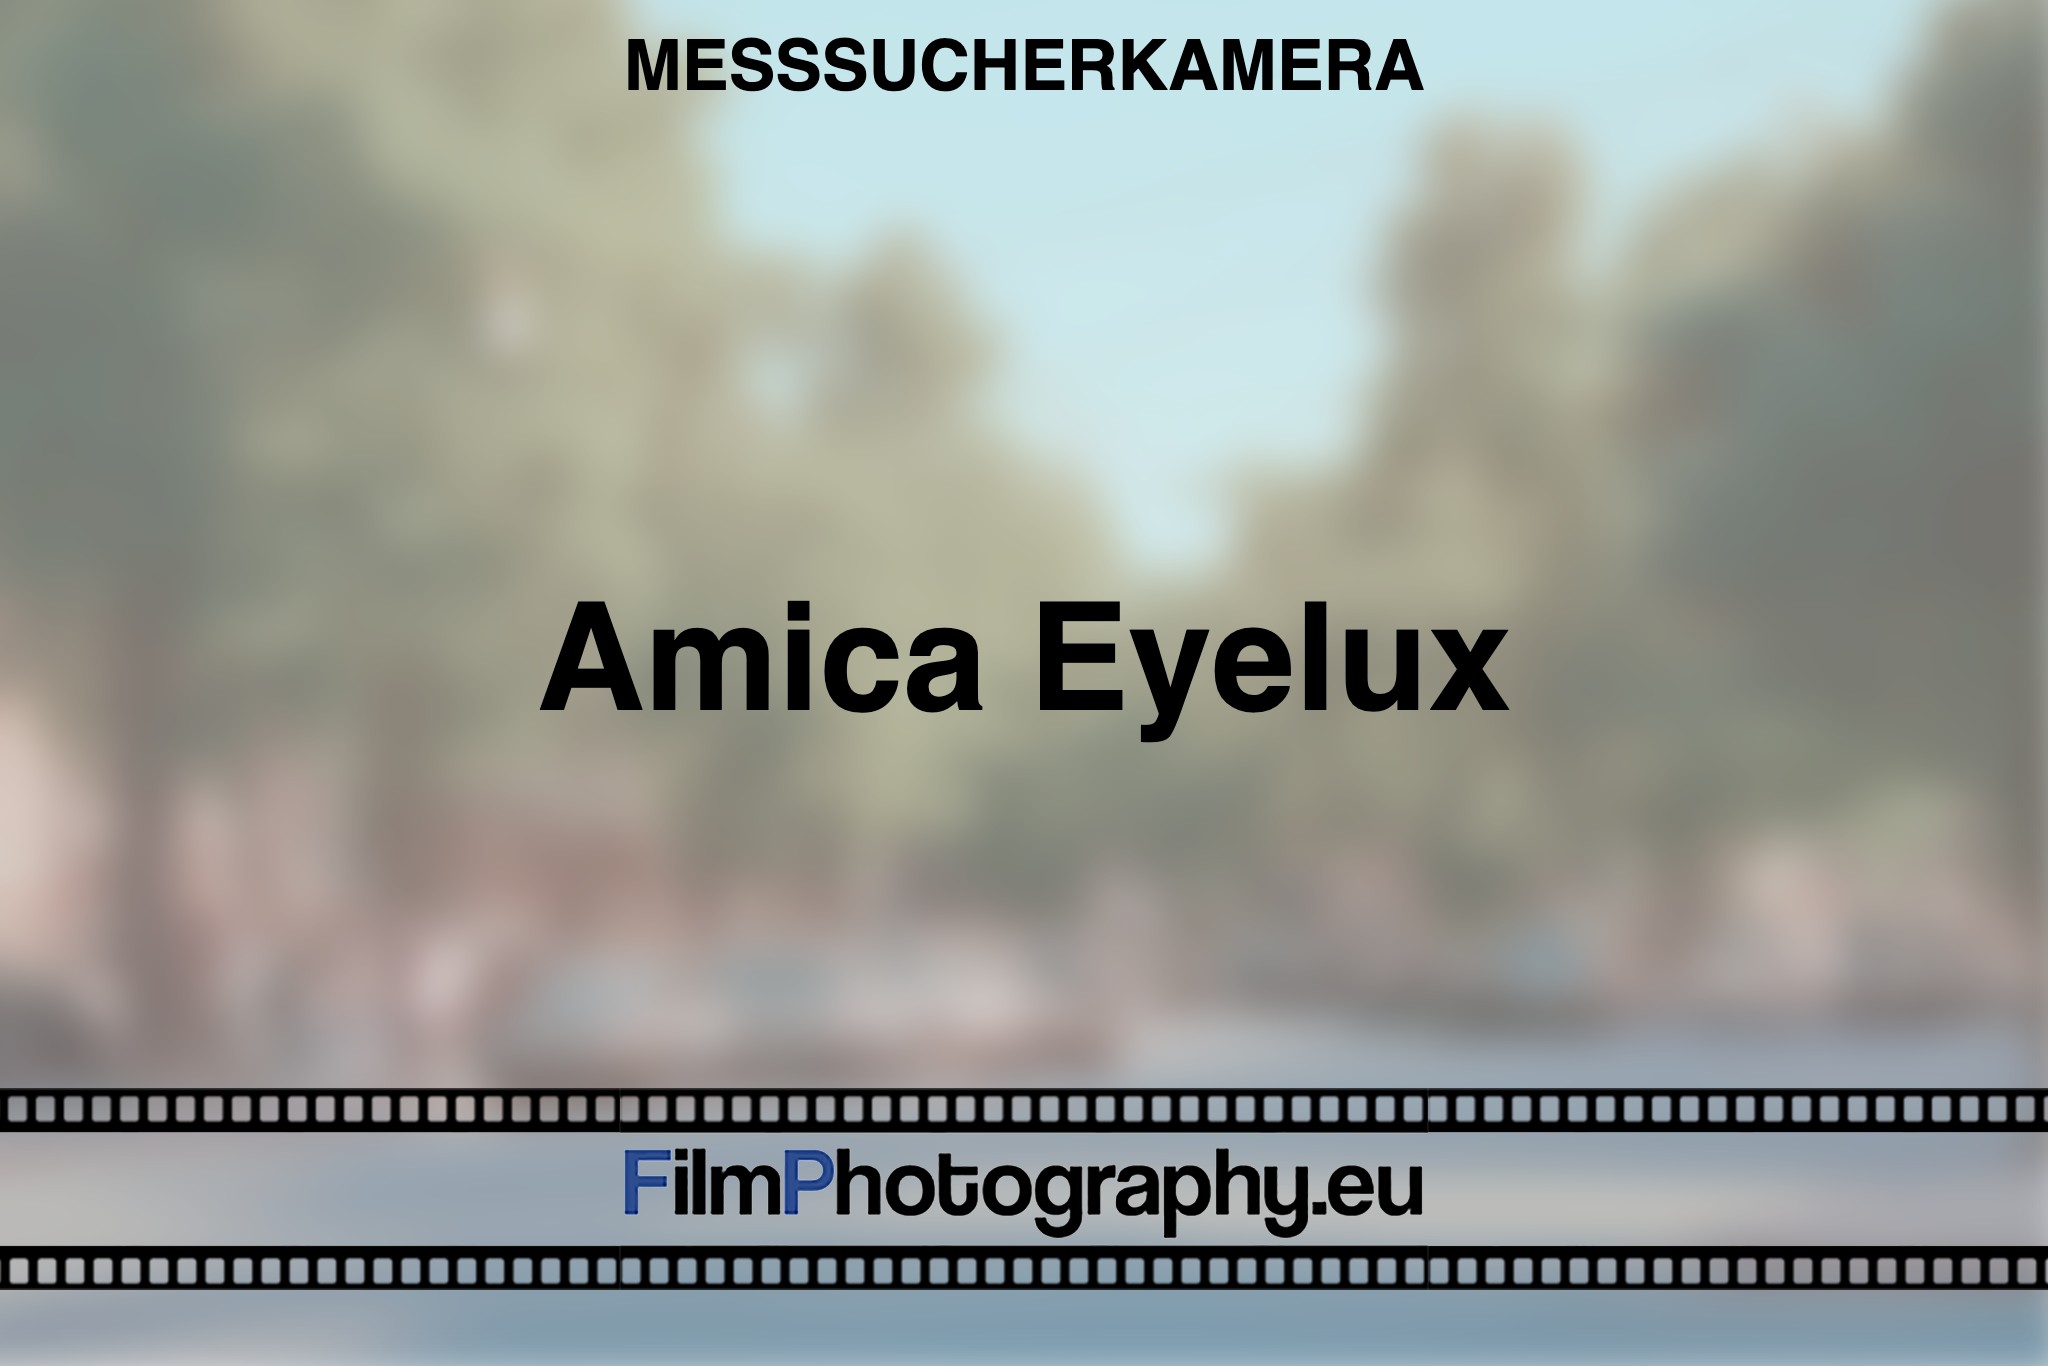 amica-eyelux-messsucherkamera-bnv